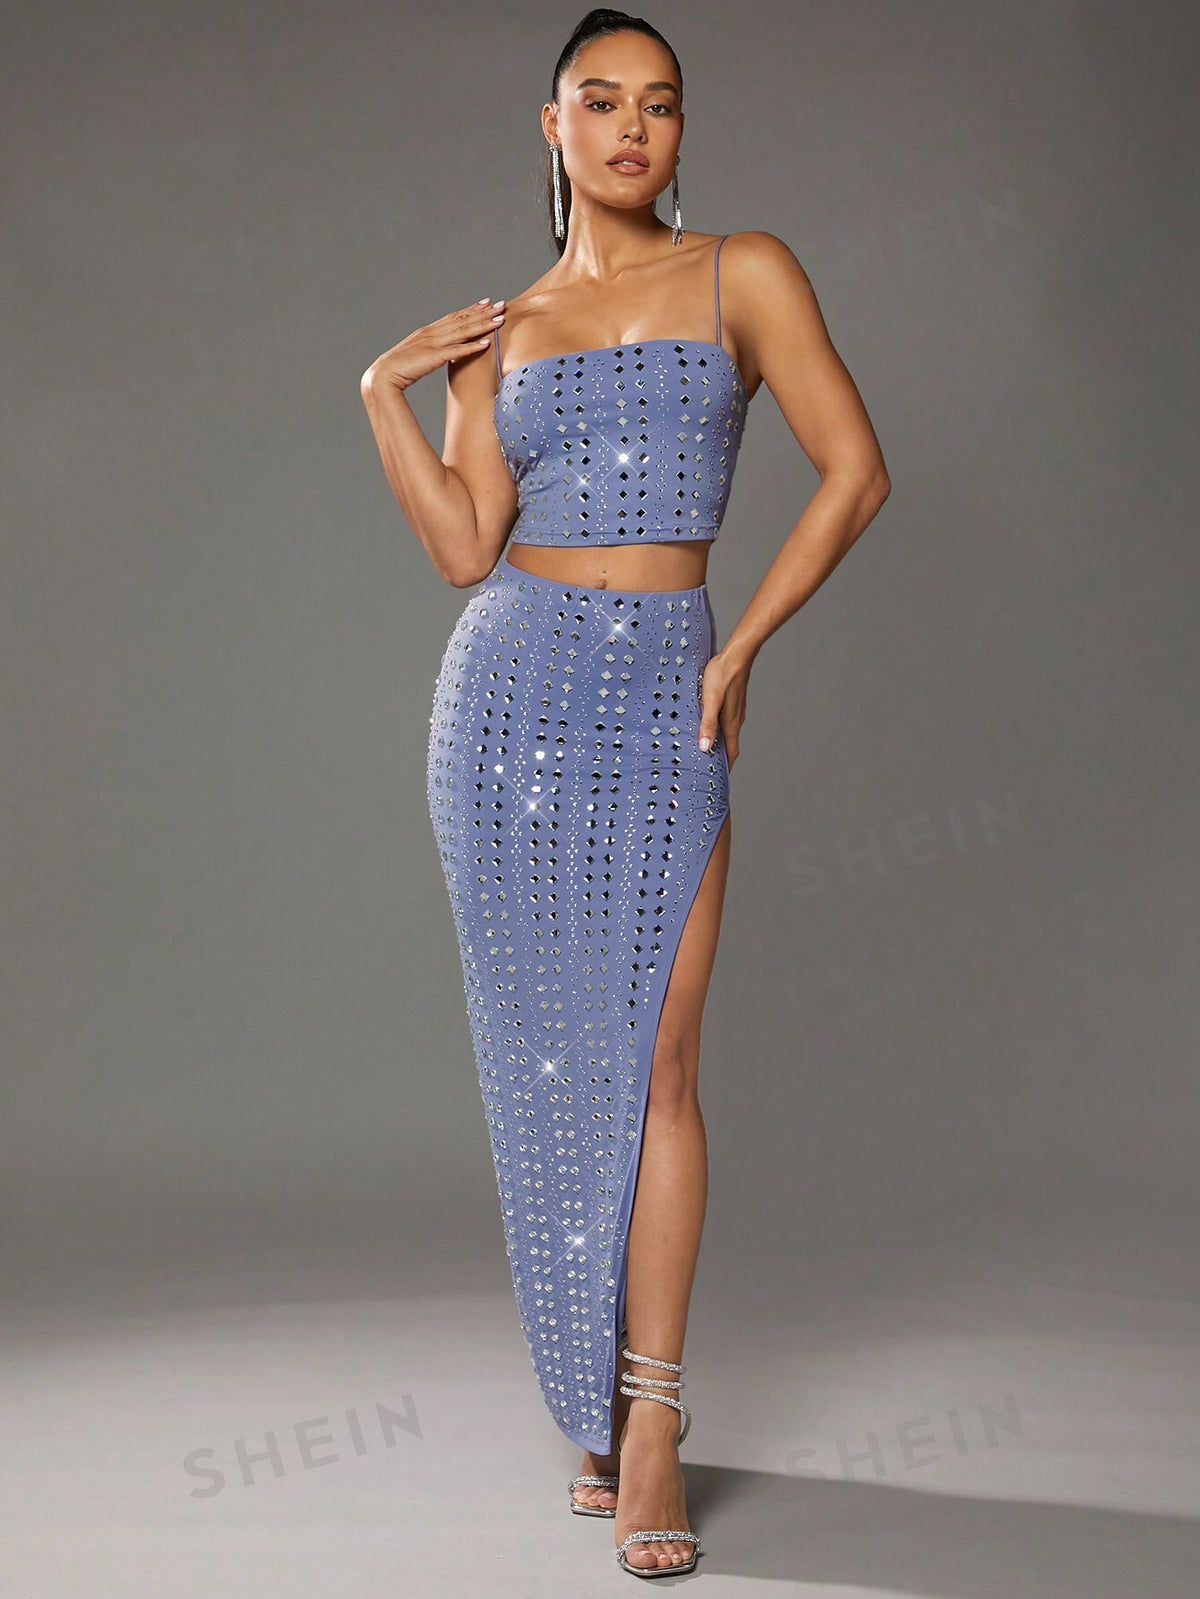 BAE Summer Prom Blue Rhinestone High Slit Tight Skirt For Women